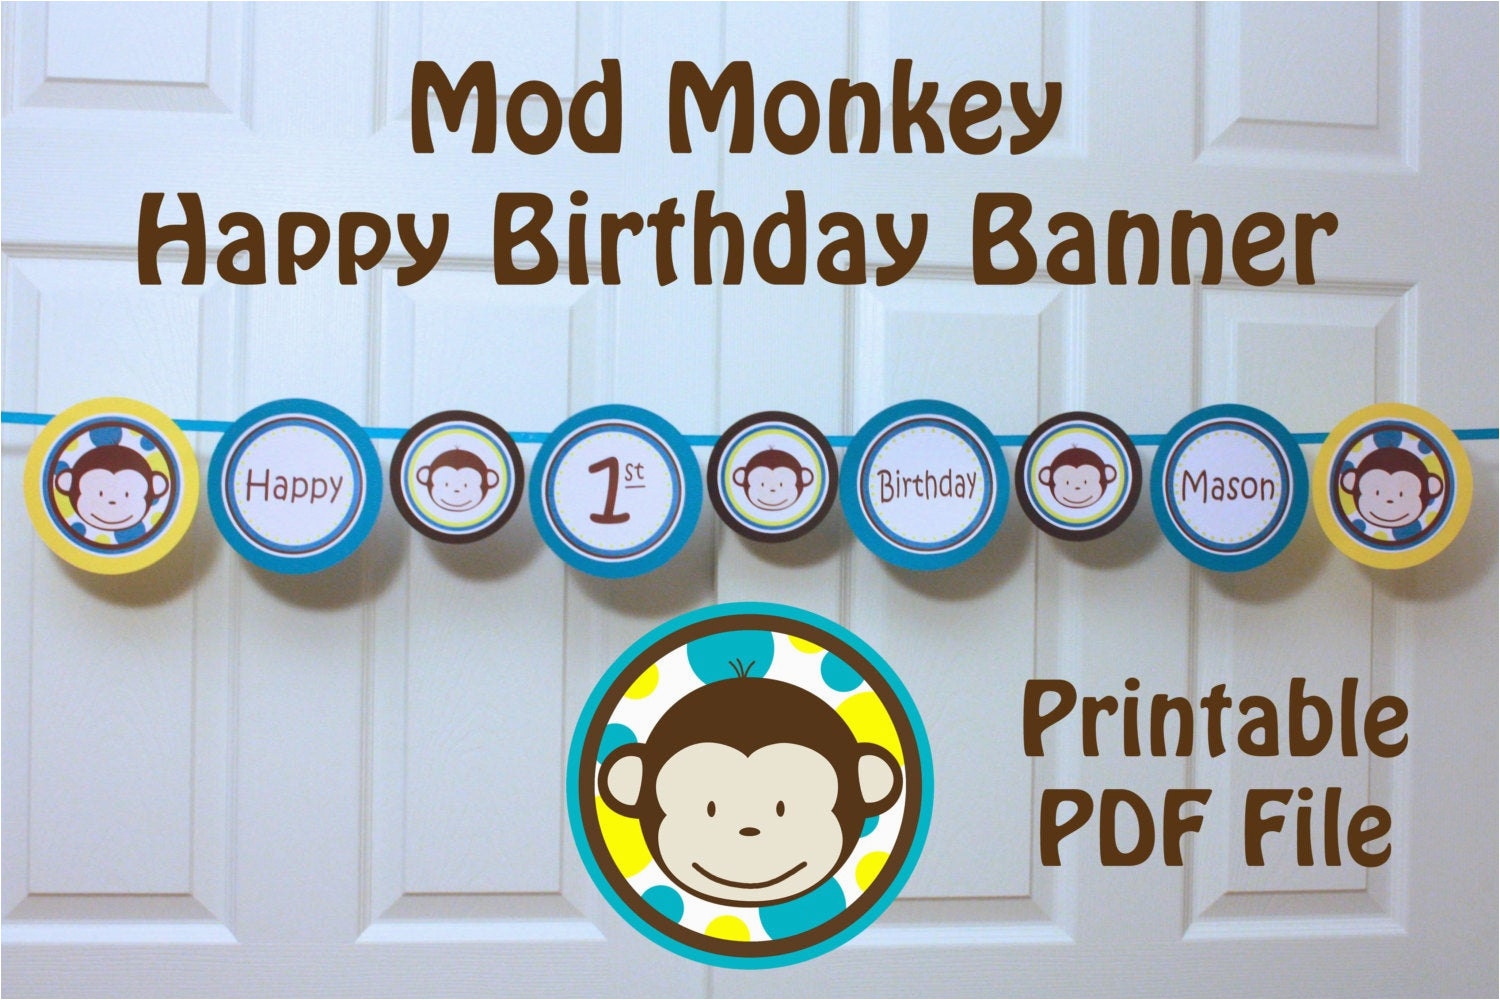 Happy 1st Birthday Banner Tesco Mod Monkey Banner Happy 1st Birthday Banner with Name